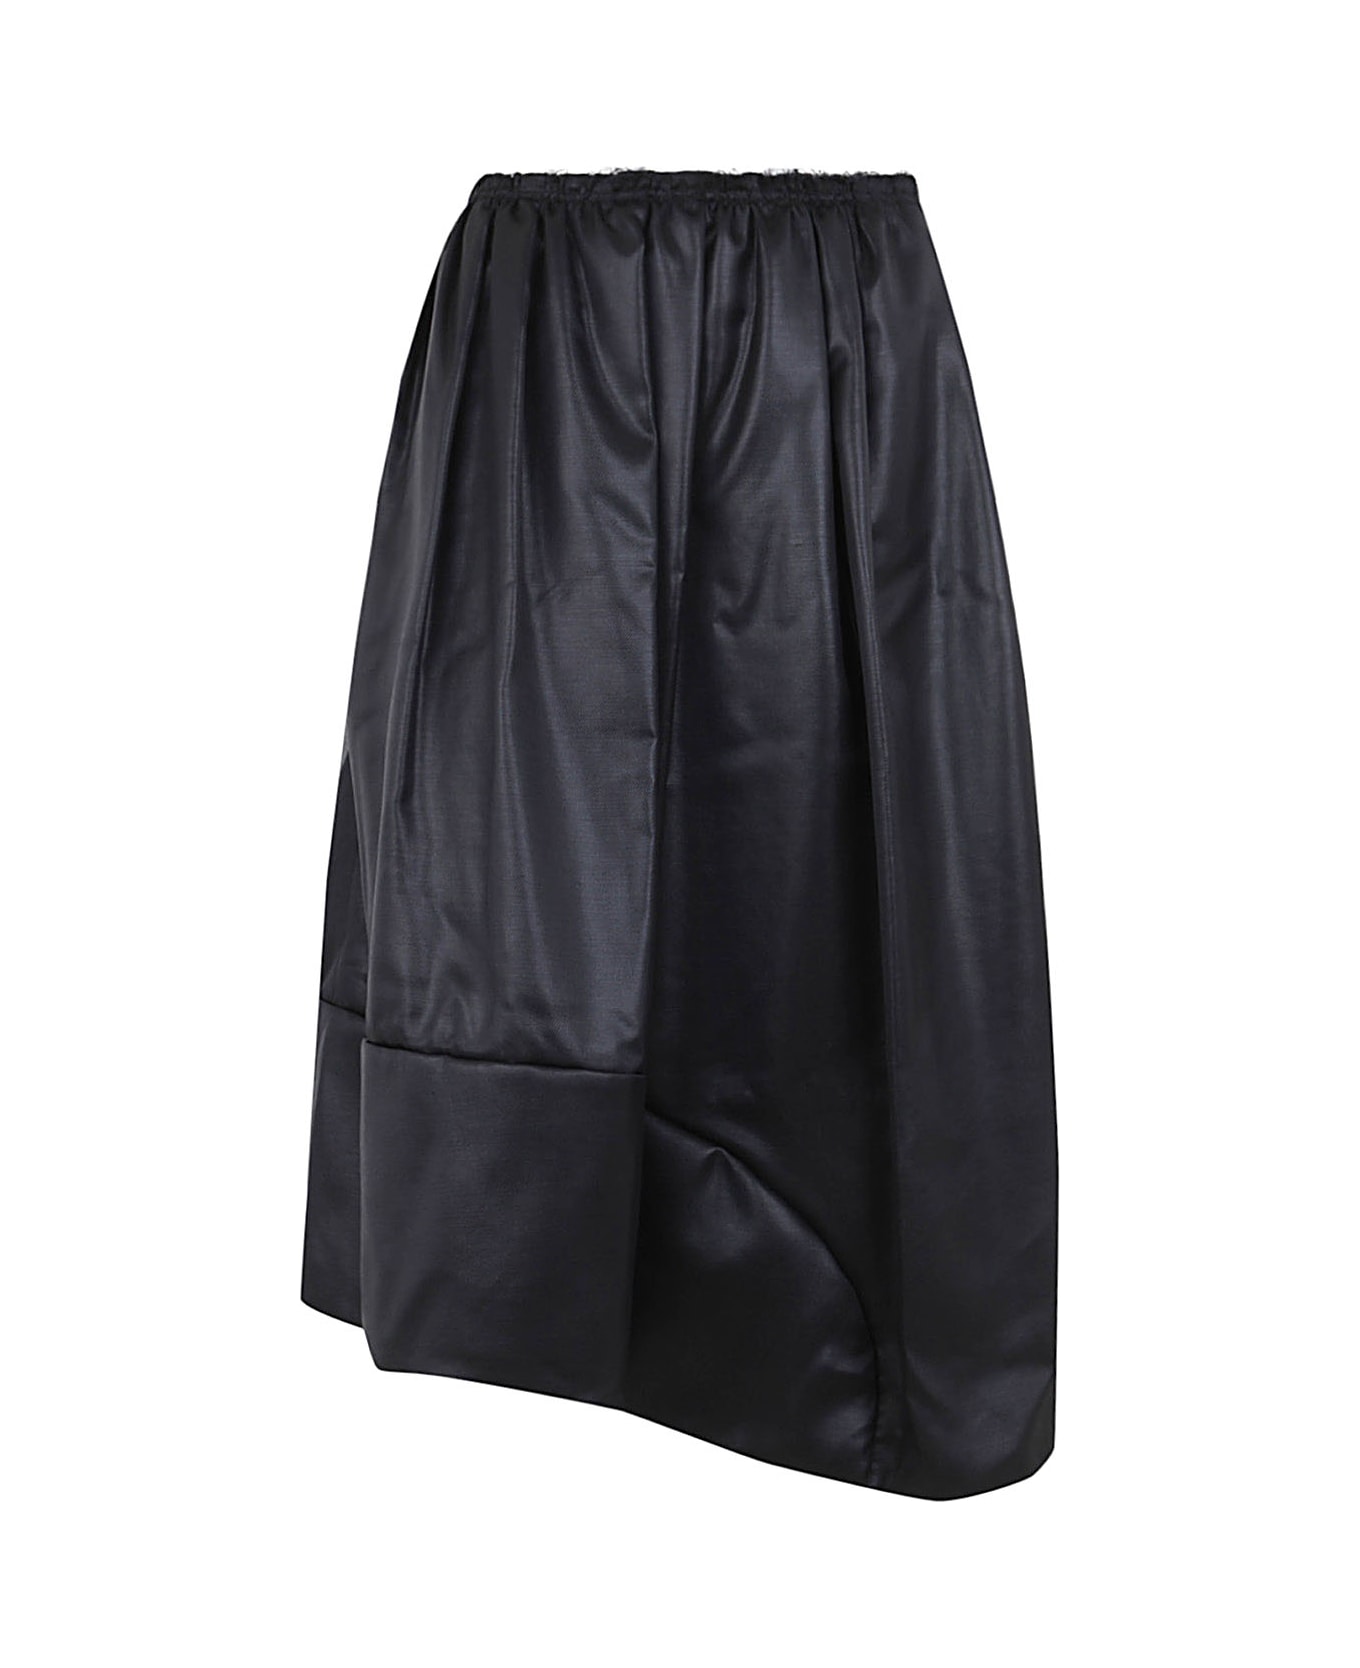 Comme des Garçons Comme des Garçons Ladies Skirt - Black